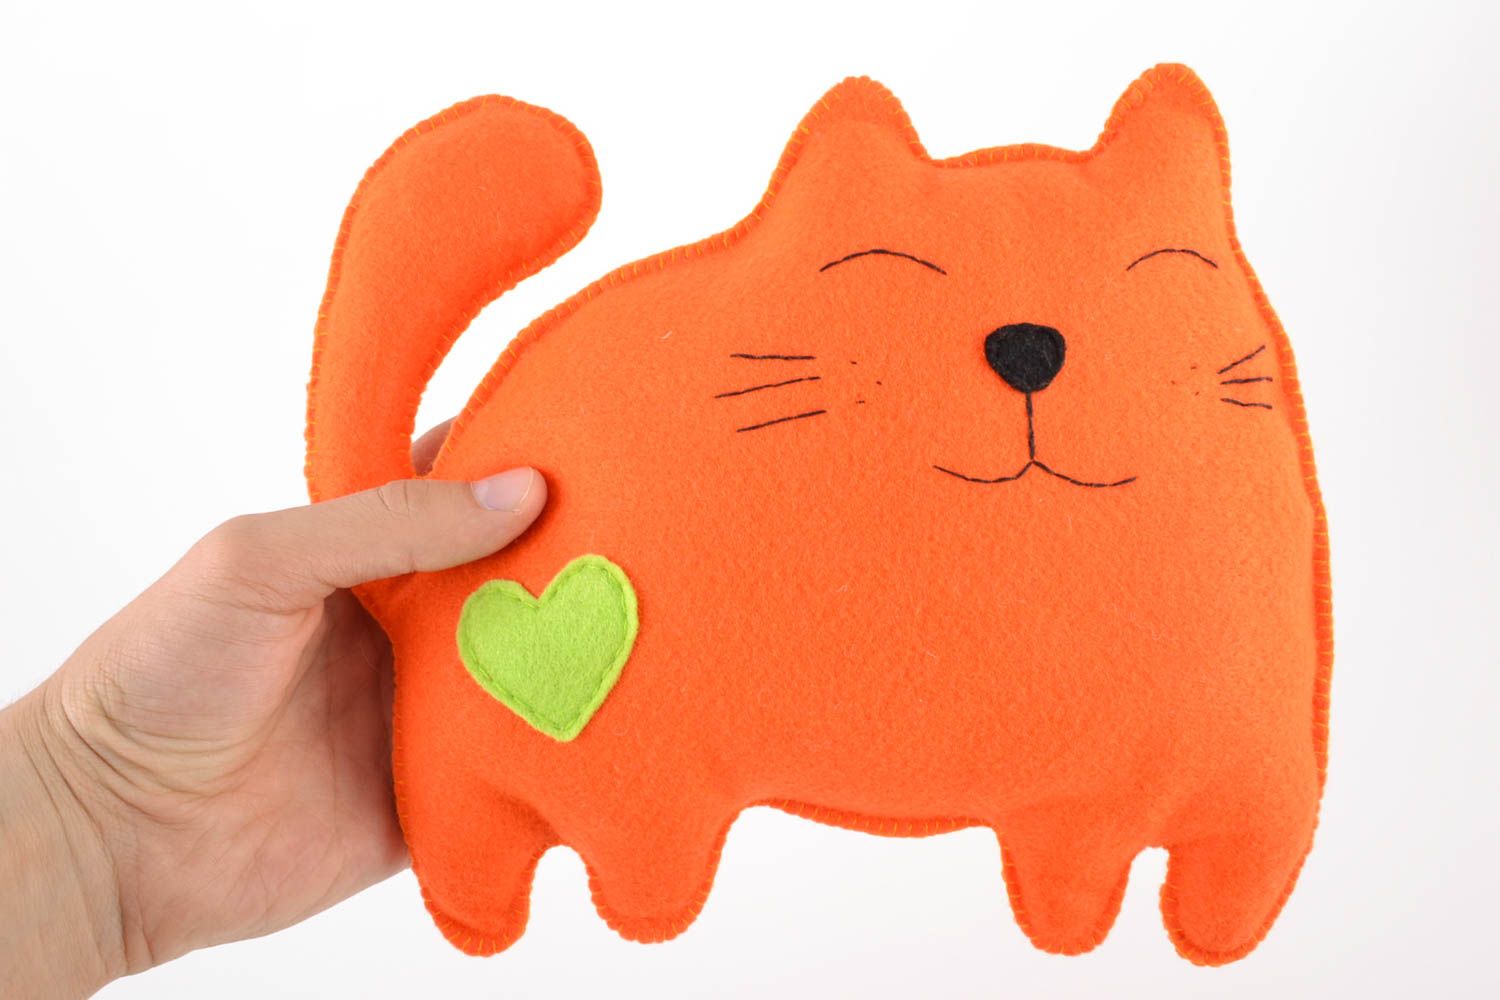 Оранжевая игрушка в виде кота ручной работы из фетра красивая оригинальная фото 2